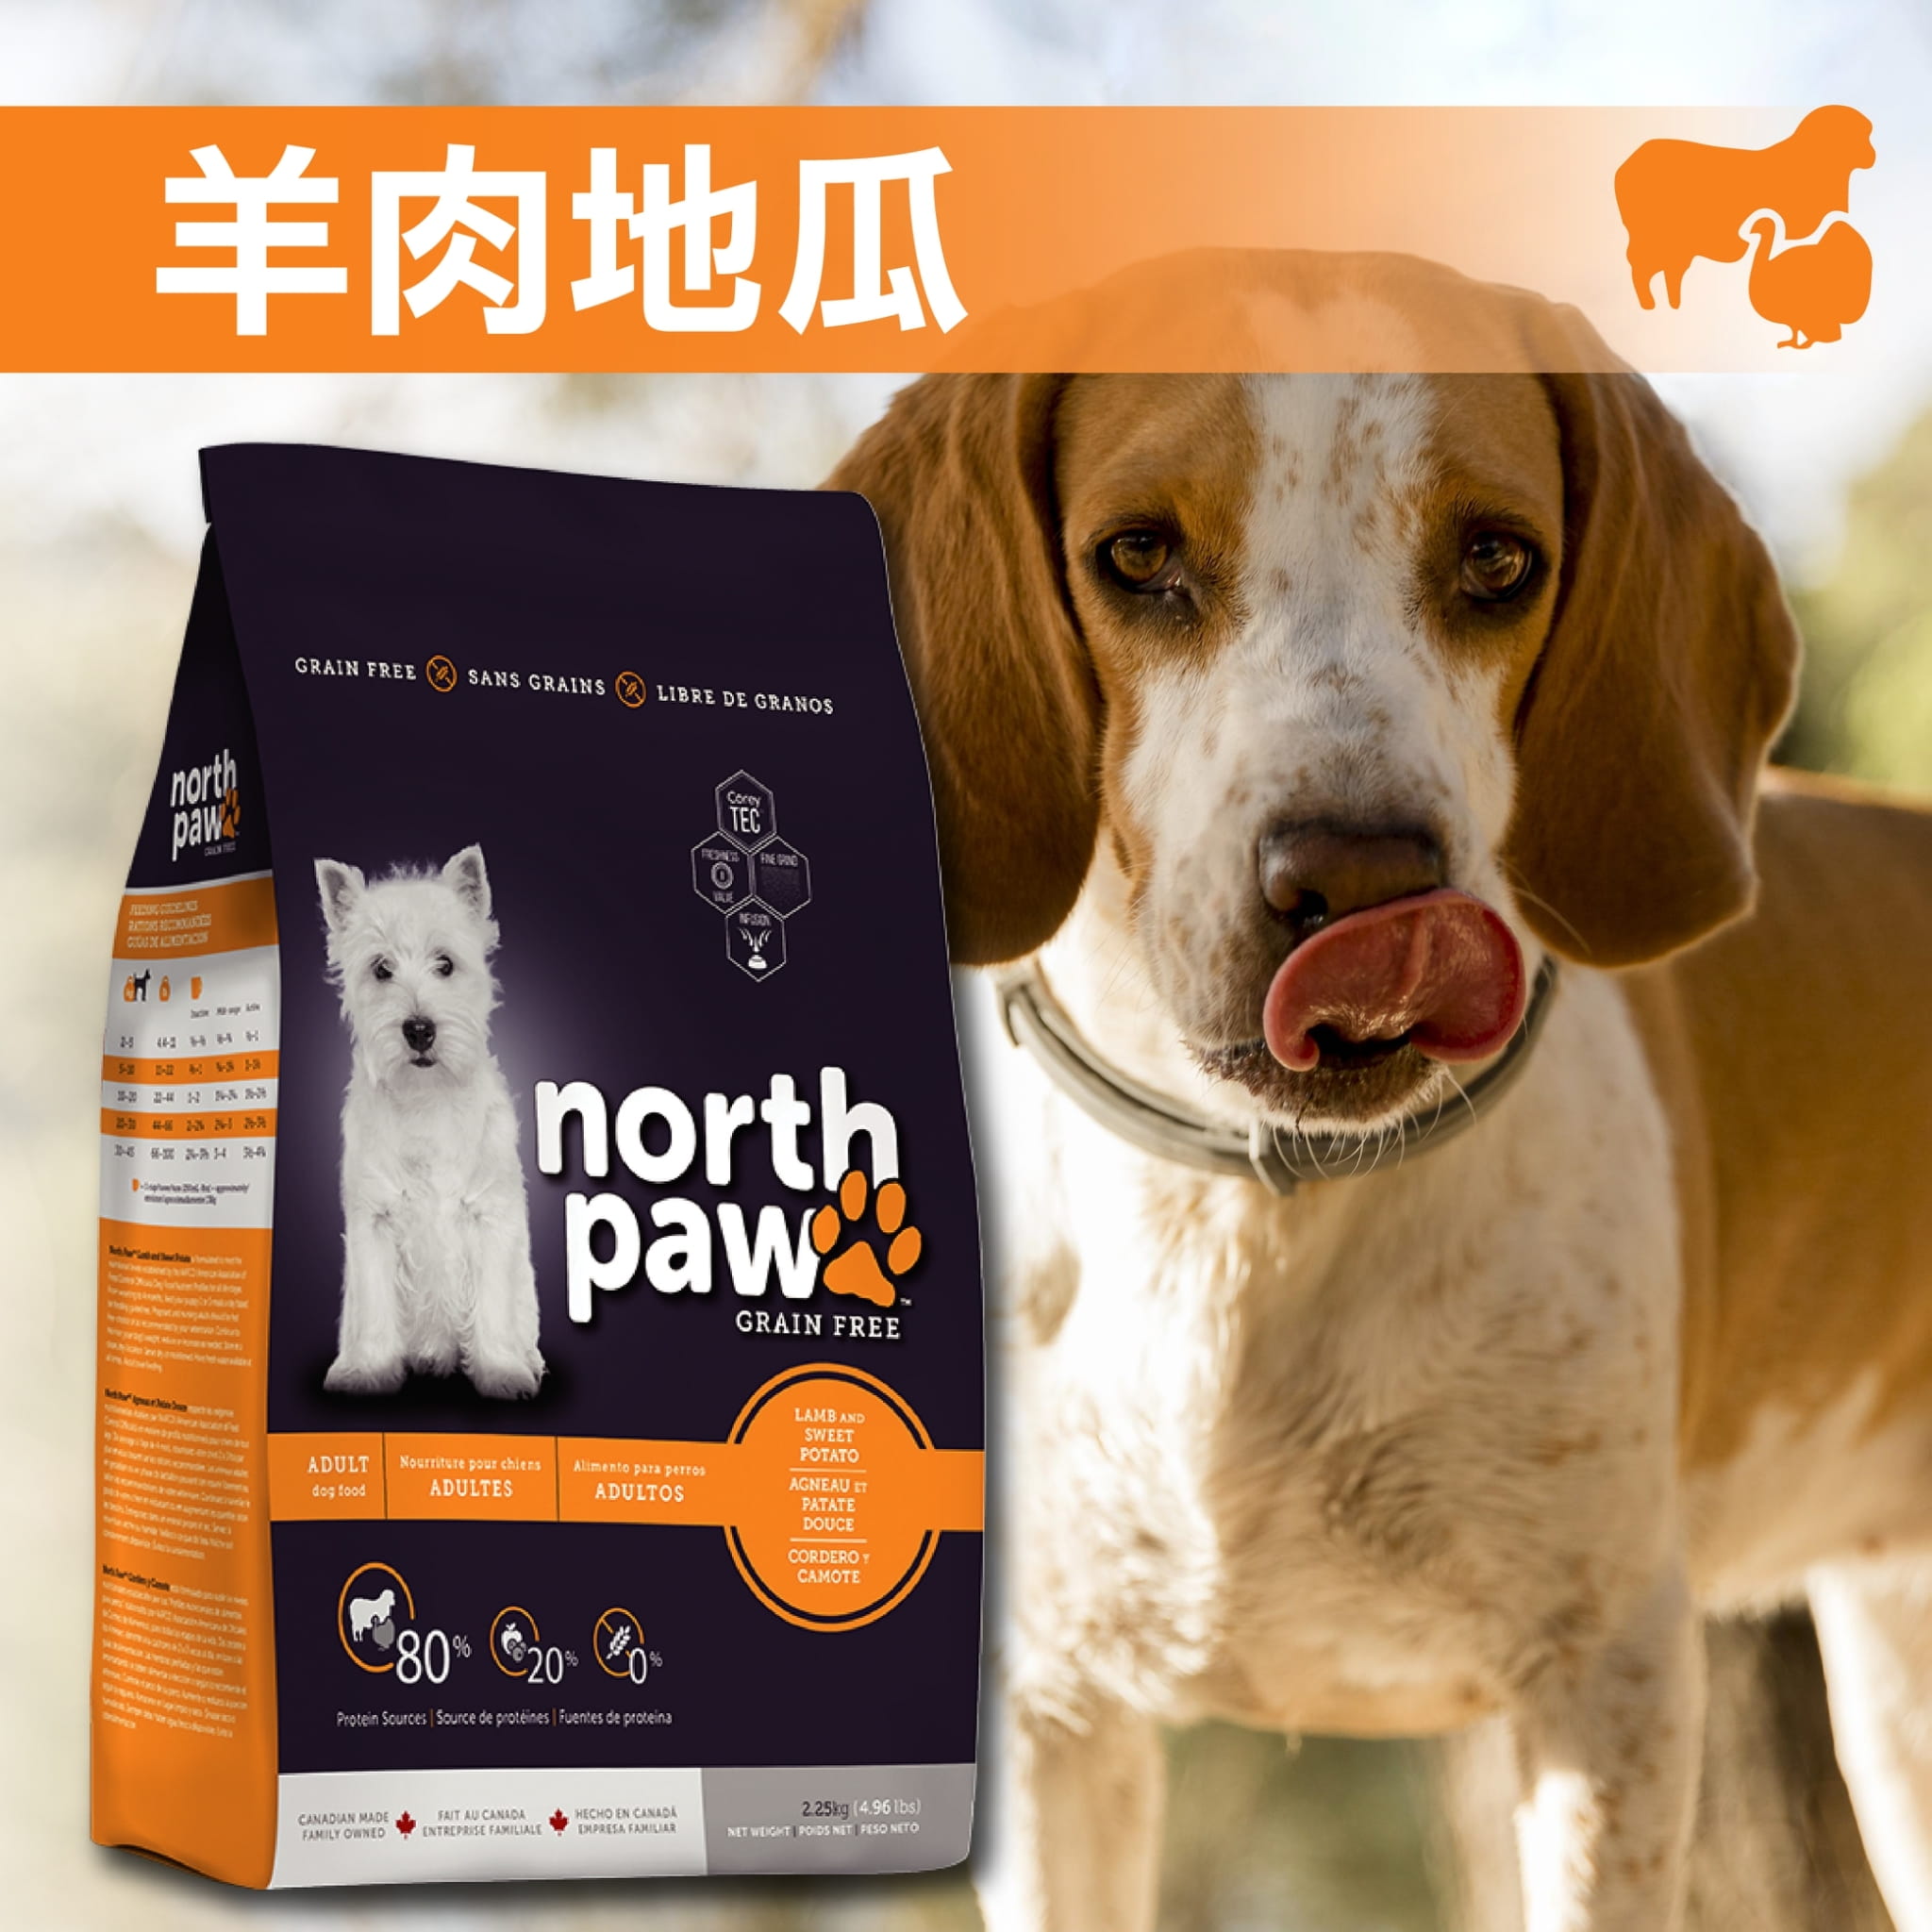 【野牧鮮食northpaw】羊肉地瓜犬飼料2.25kg